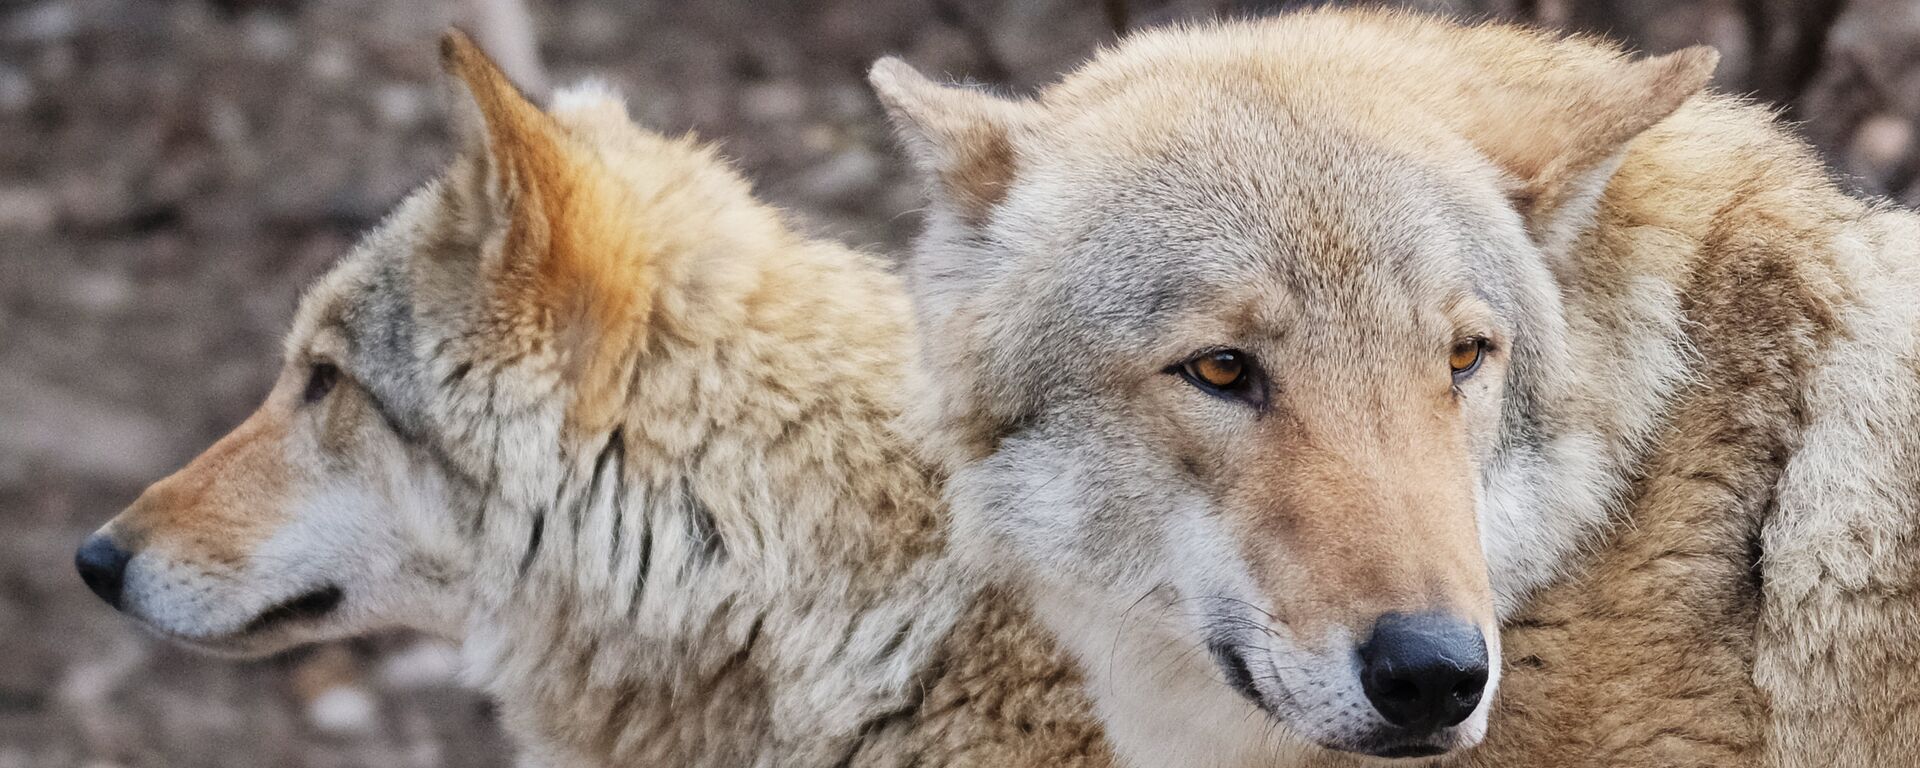 Европейские волки (canis lupus) в Московском зоопарке - Sputnik Латвия, 1920, 25.11.2019